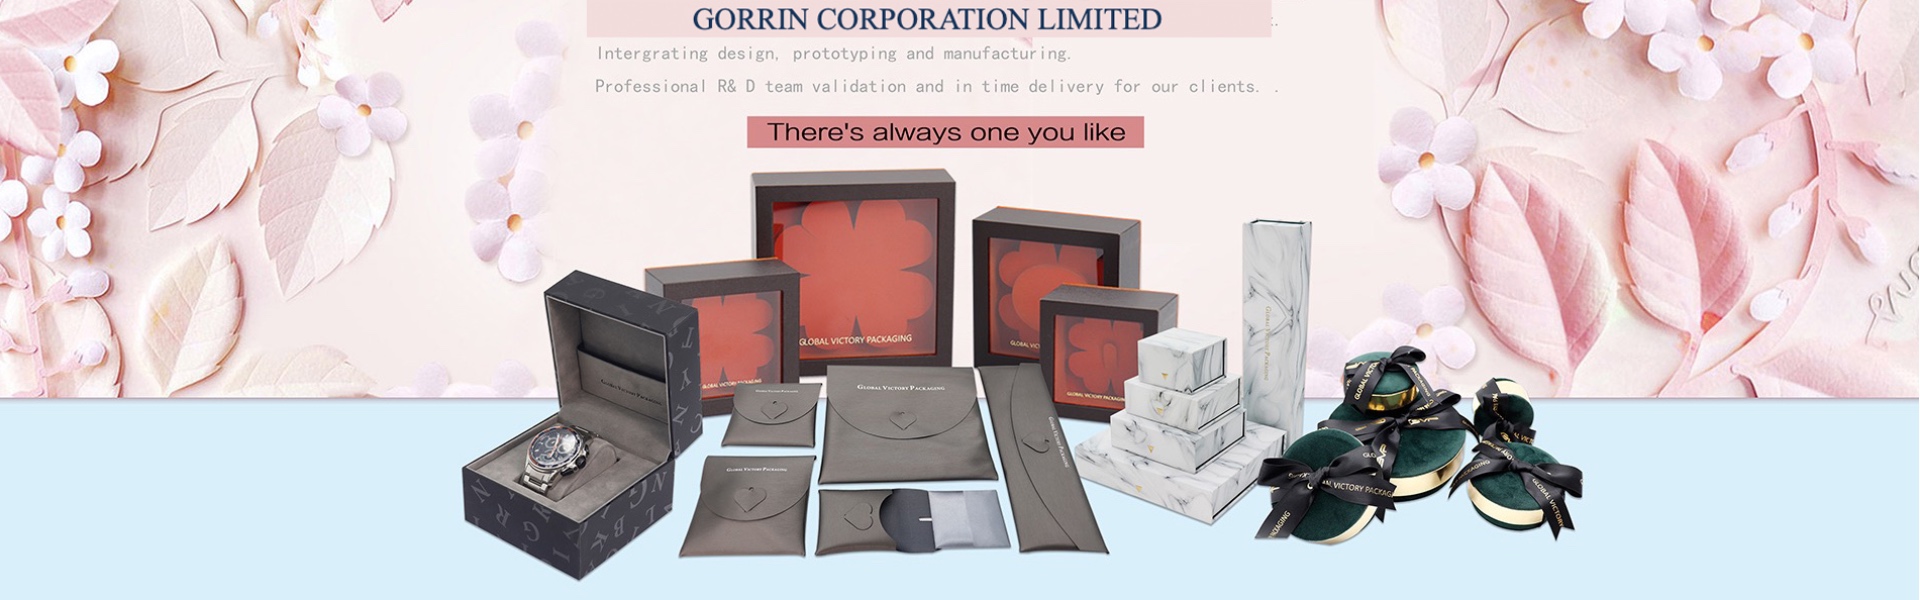 ジ ュ エ エ リ ー 、 ジ ュ エ エ リ ー ボ ー ク ス,Gorrin corporation limited